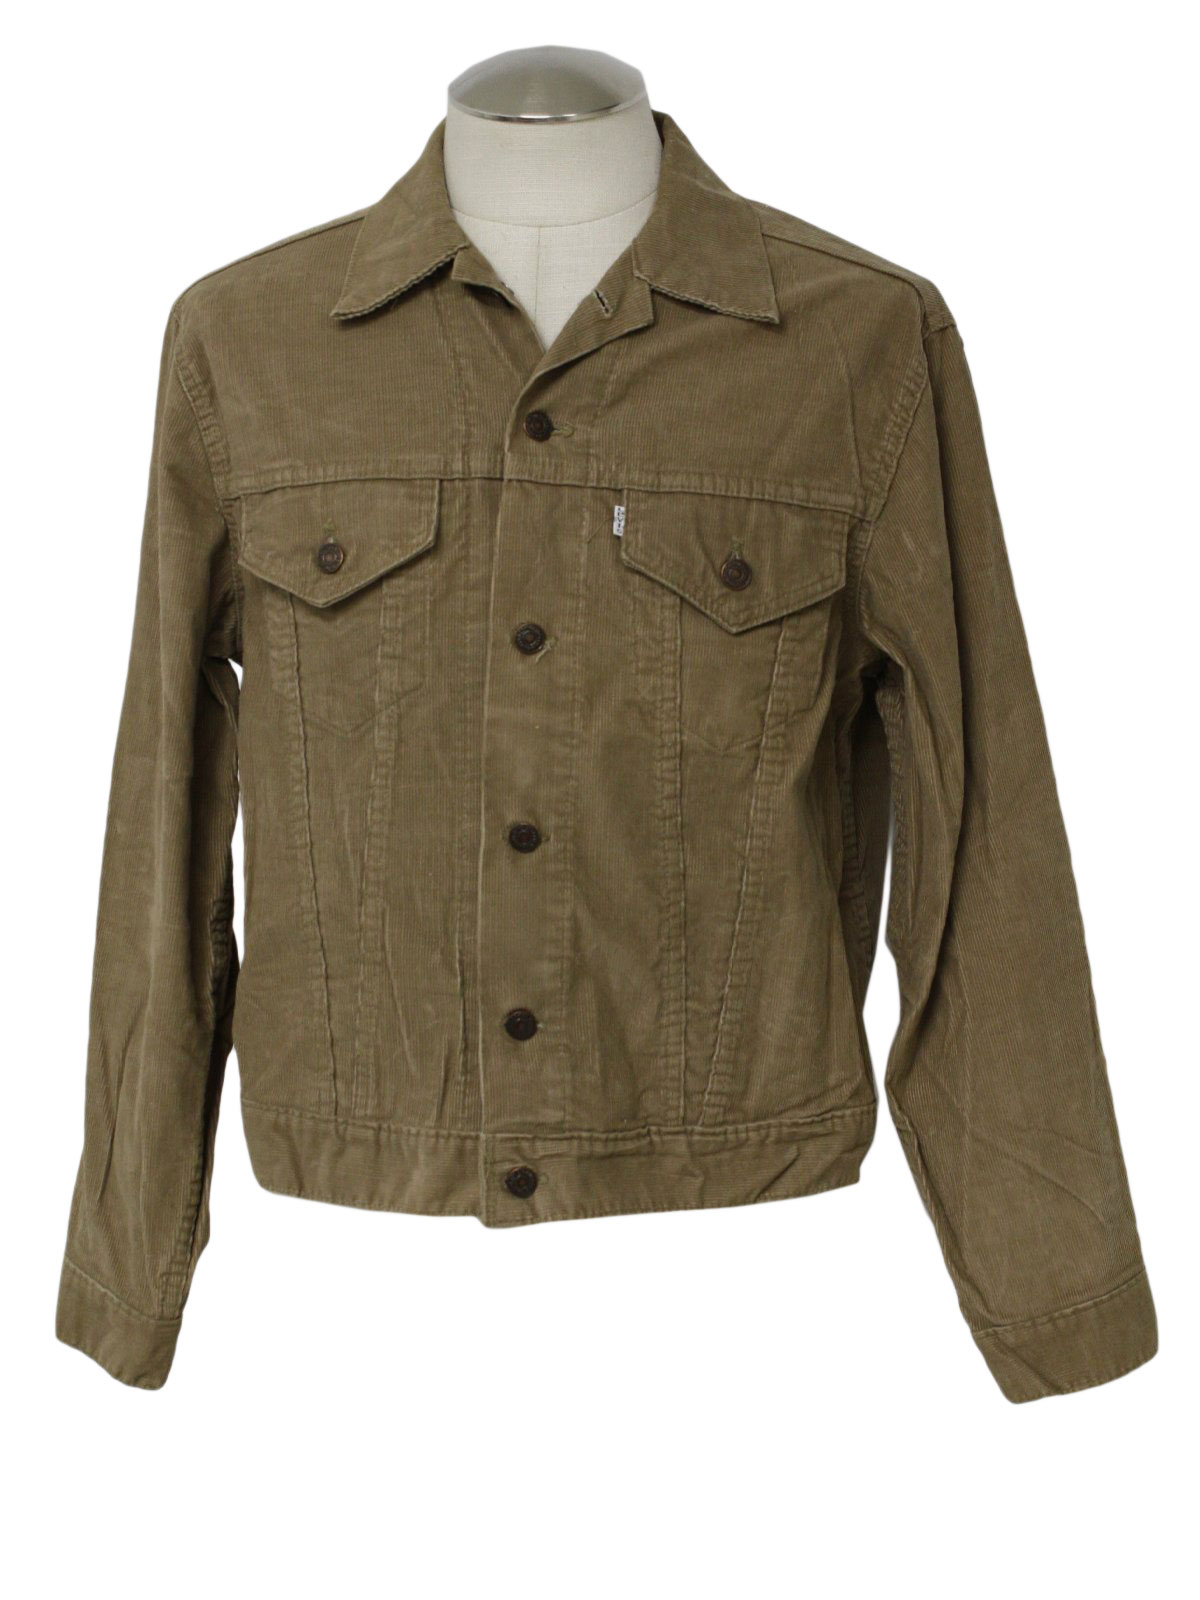 Vintage Levis 70's Jacket: 70s -Levis- Mens tan cotton pinwale corduroy ...